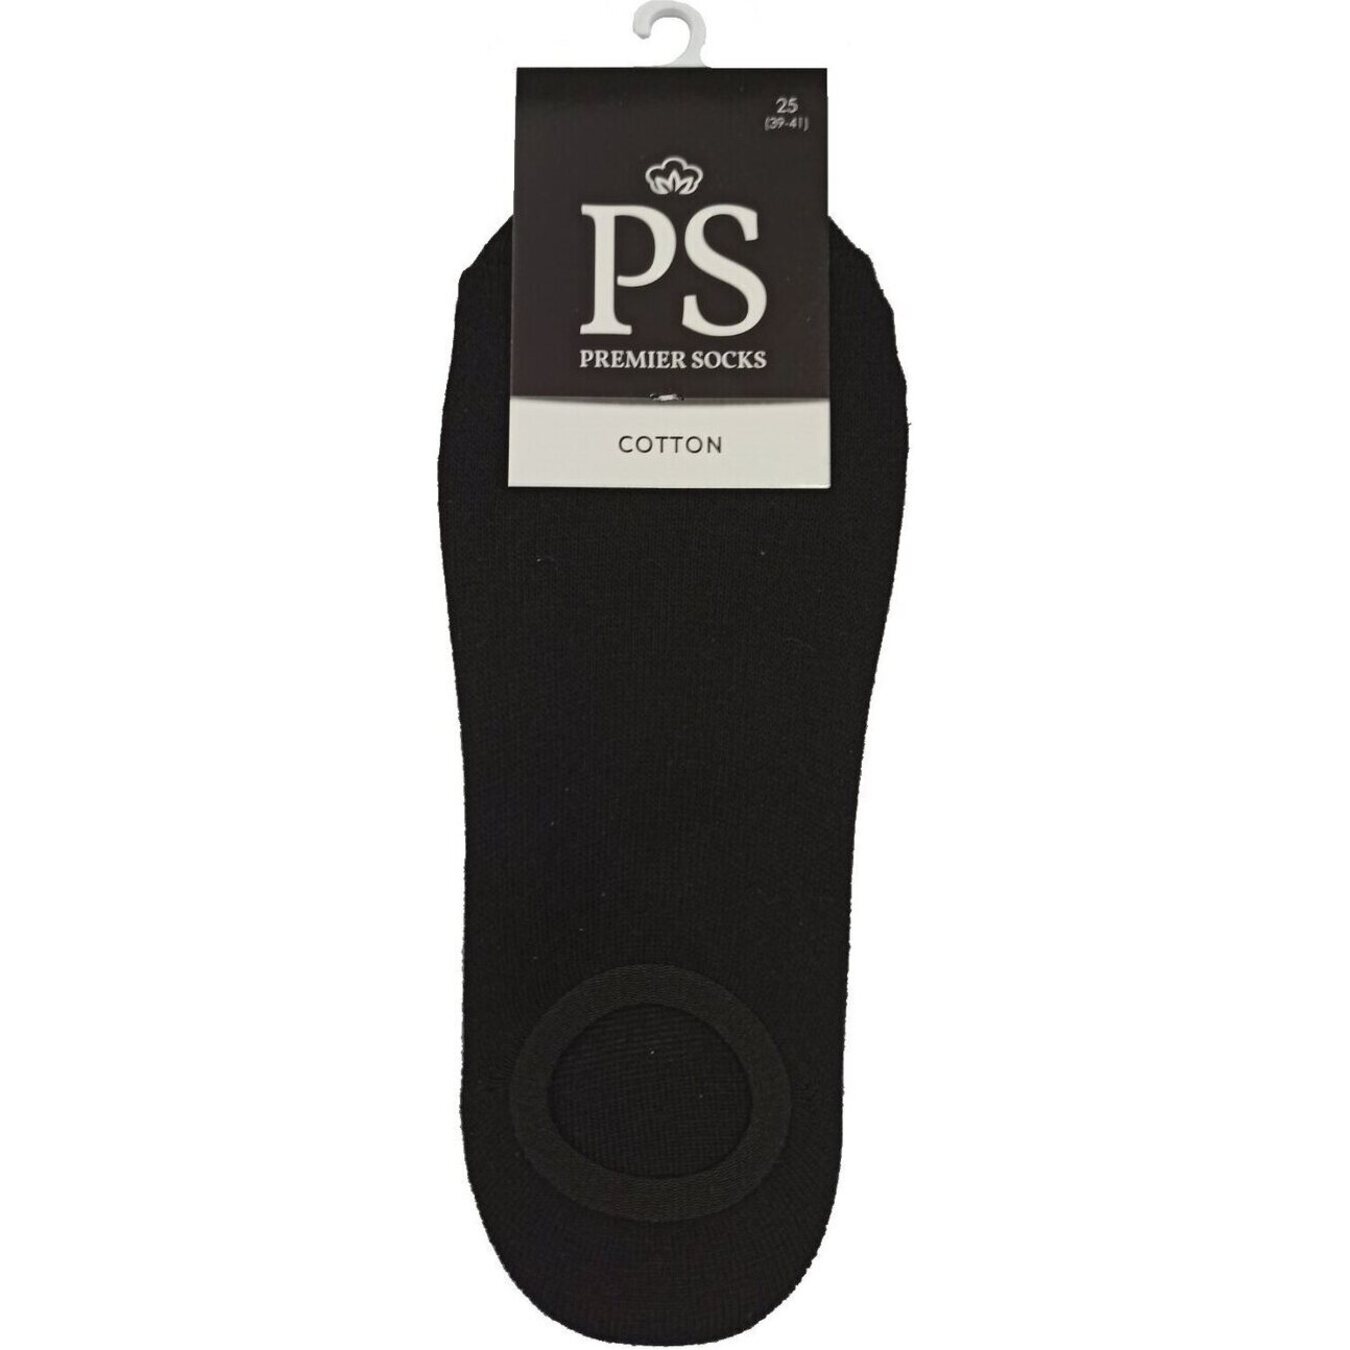 Premier Socks men's ring followers size 25 black